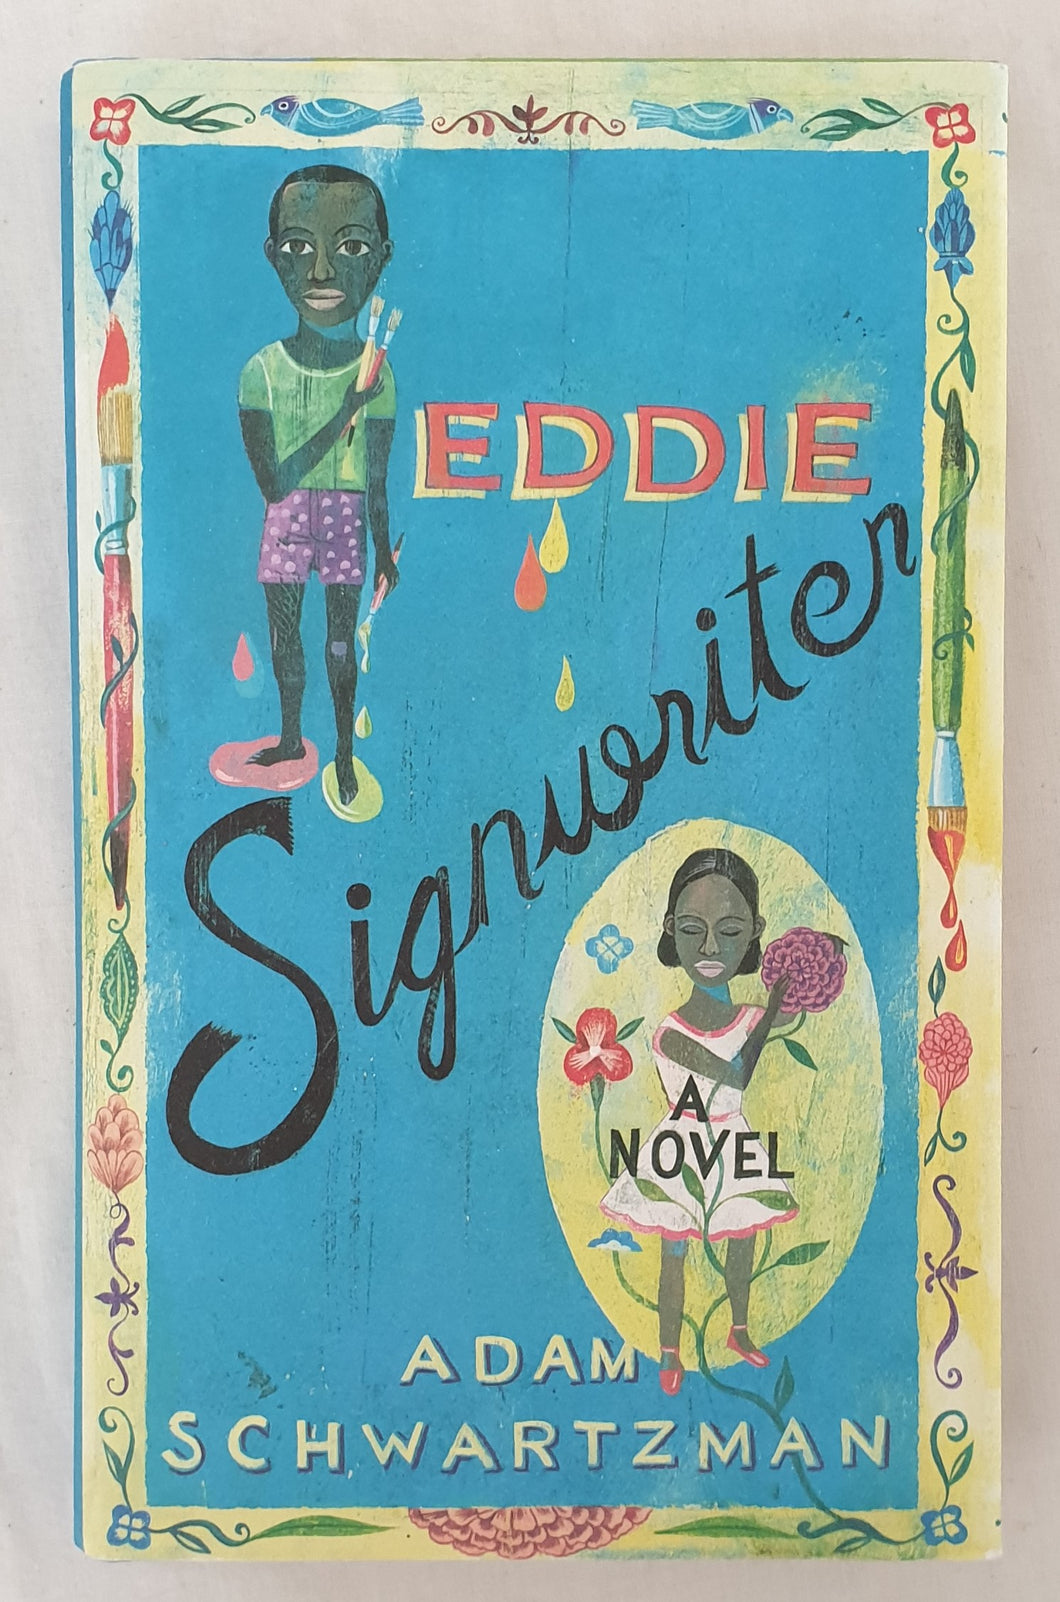 Eddie Signwriter by Adam Schwartzman